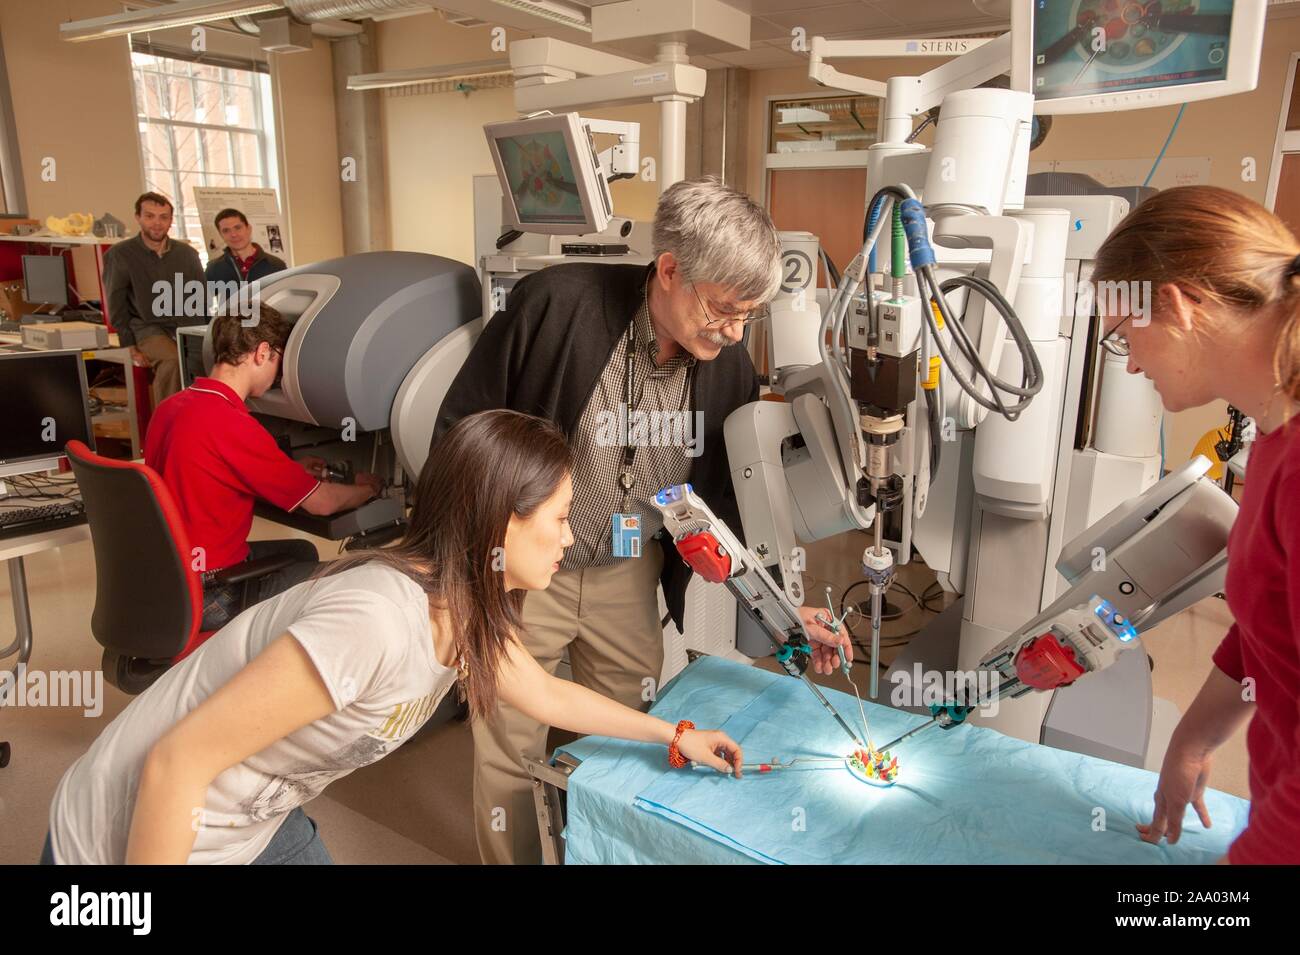 Russell Taylor, professeur d'informatique, et un étudiant en génie de l'École de merlan, utilisez du outils pour aider un robot chirurgical da Vinci travaillant dans une fausse salle d'opération à la Johns Hopkins University, Baltimore, Maryland, le 6 avril 2009. À partir de la collection photographique de Homewood. () Banque D'Images